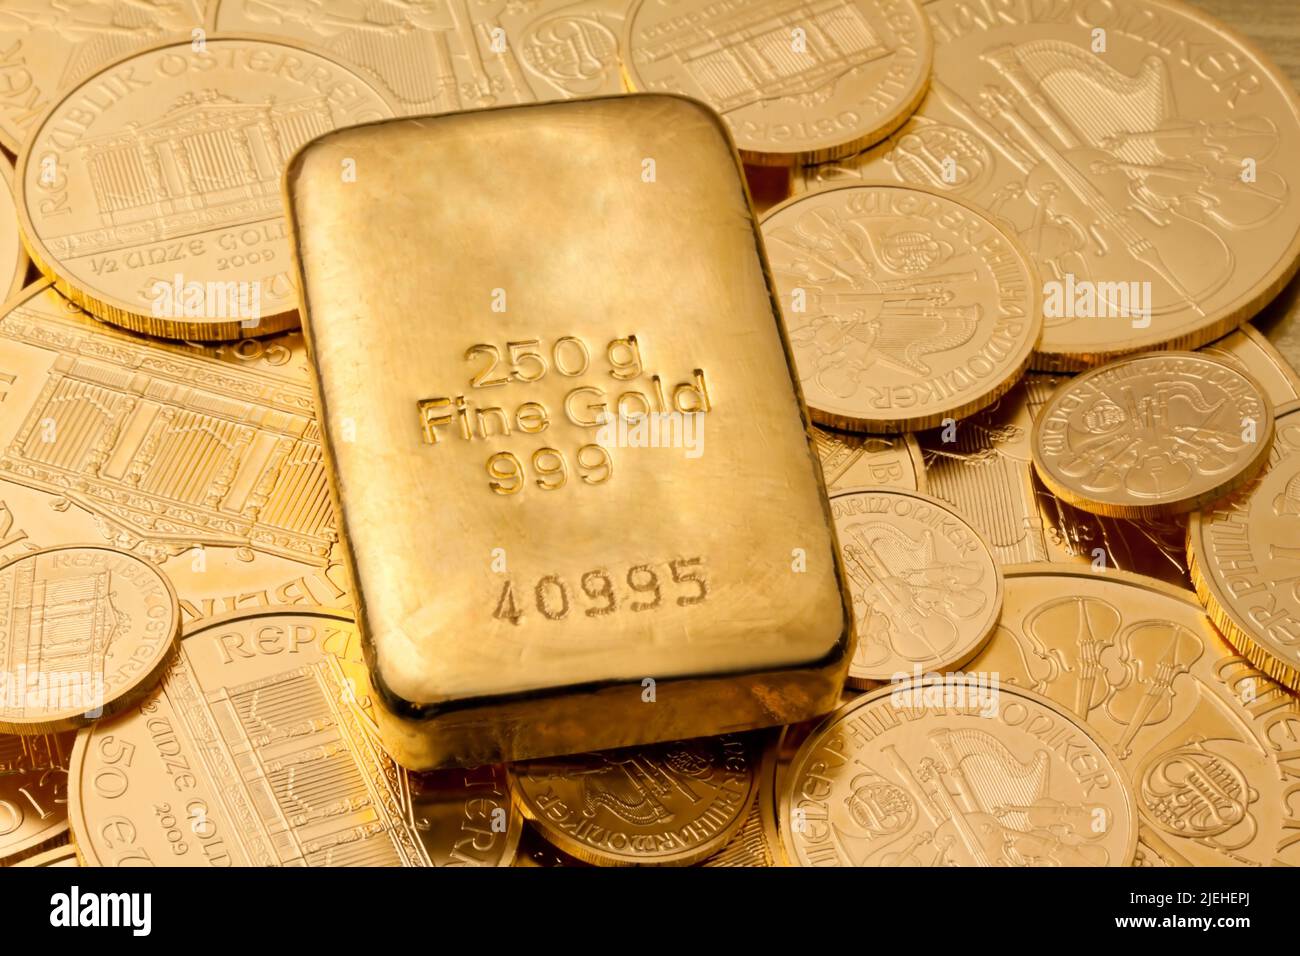 Geldanlage in Gold und Münzen, 250 Gramm Feingold, Goldmünze, Goldmünzen, Goldbarren, Stockfoto